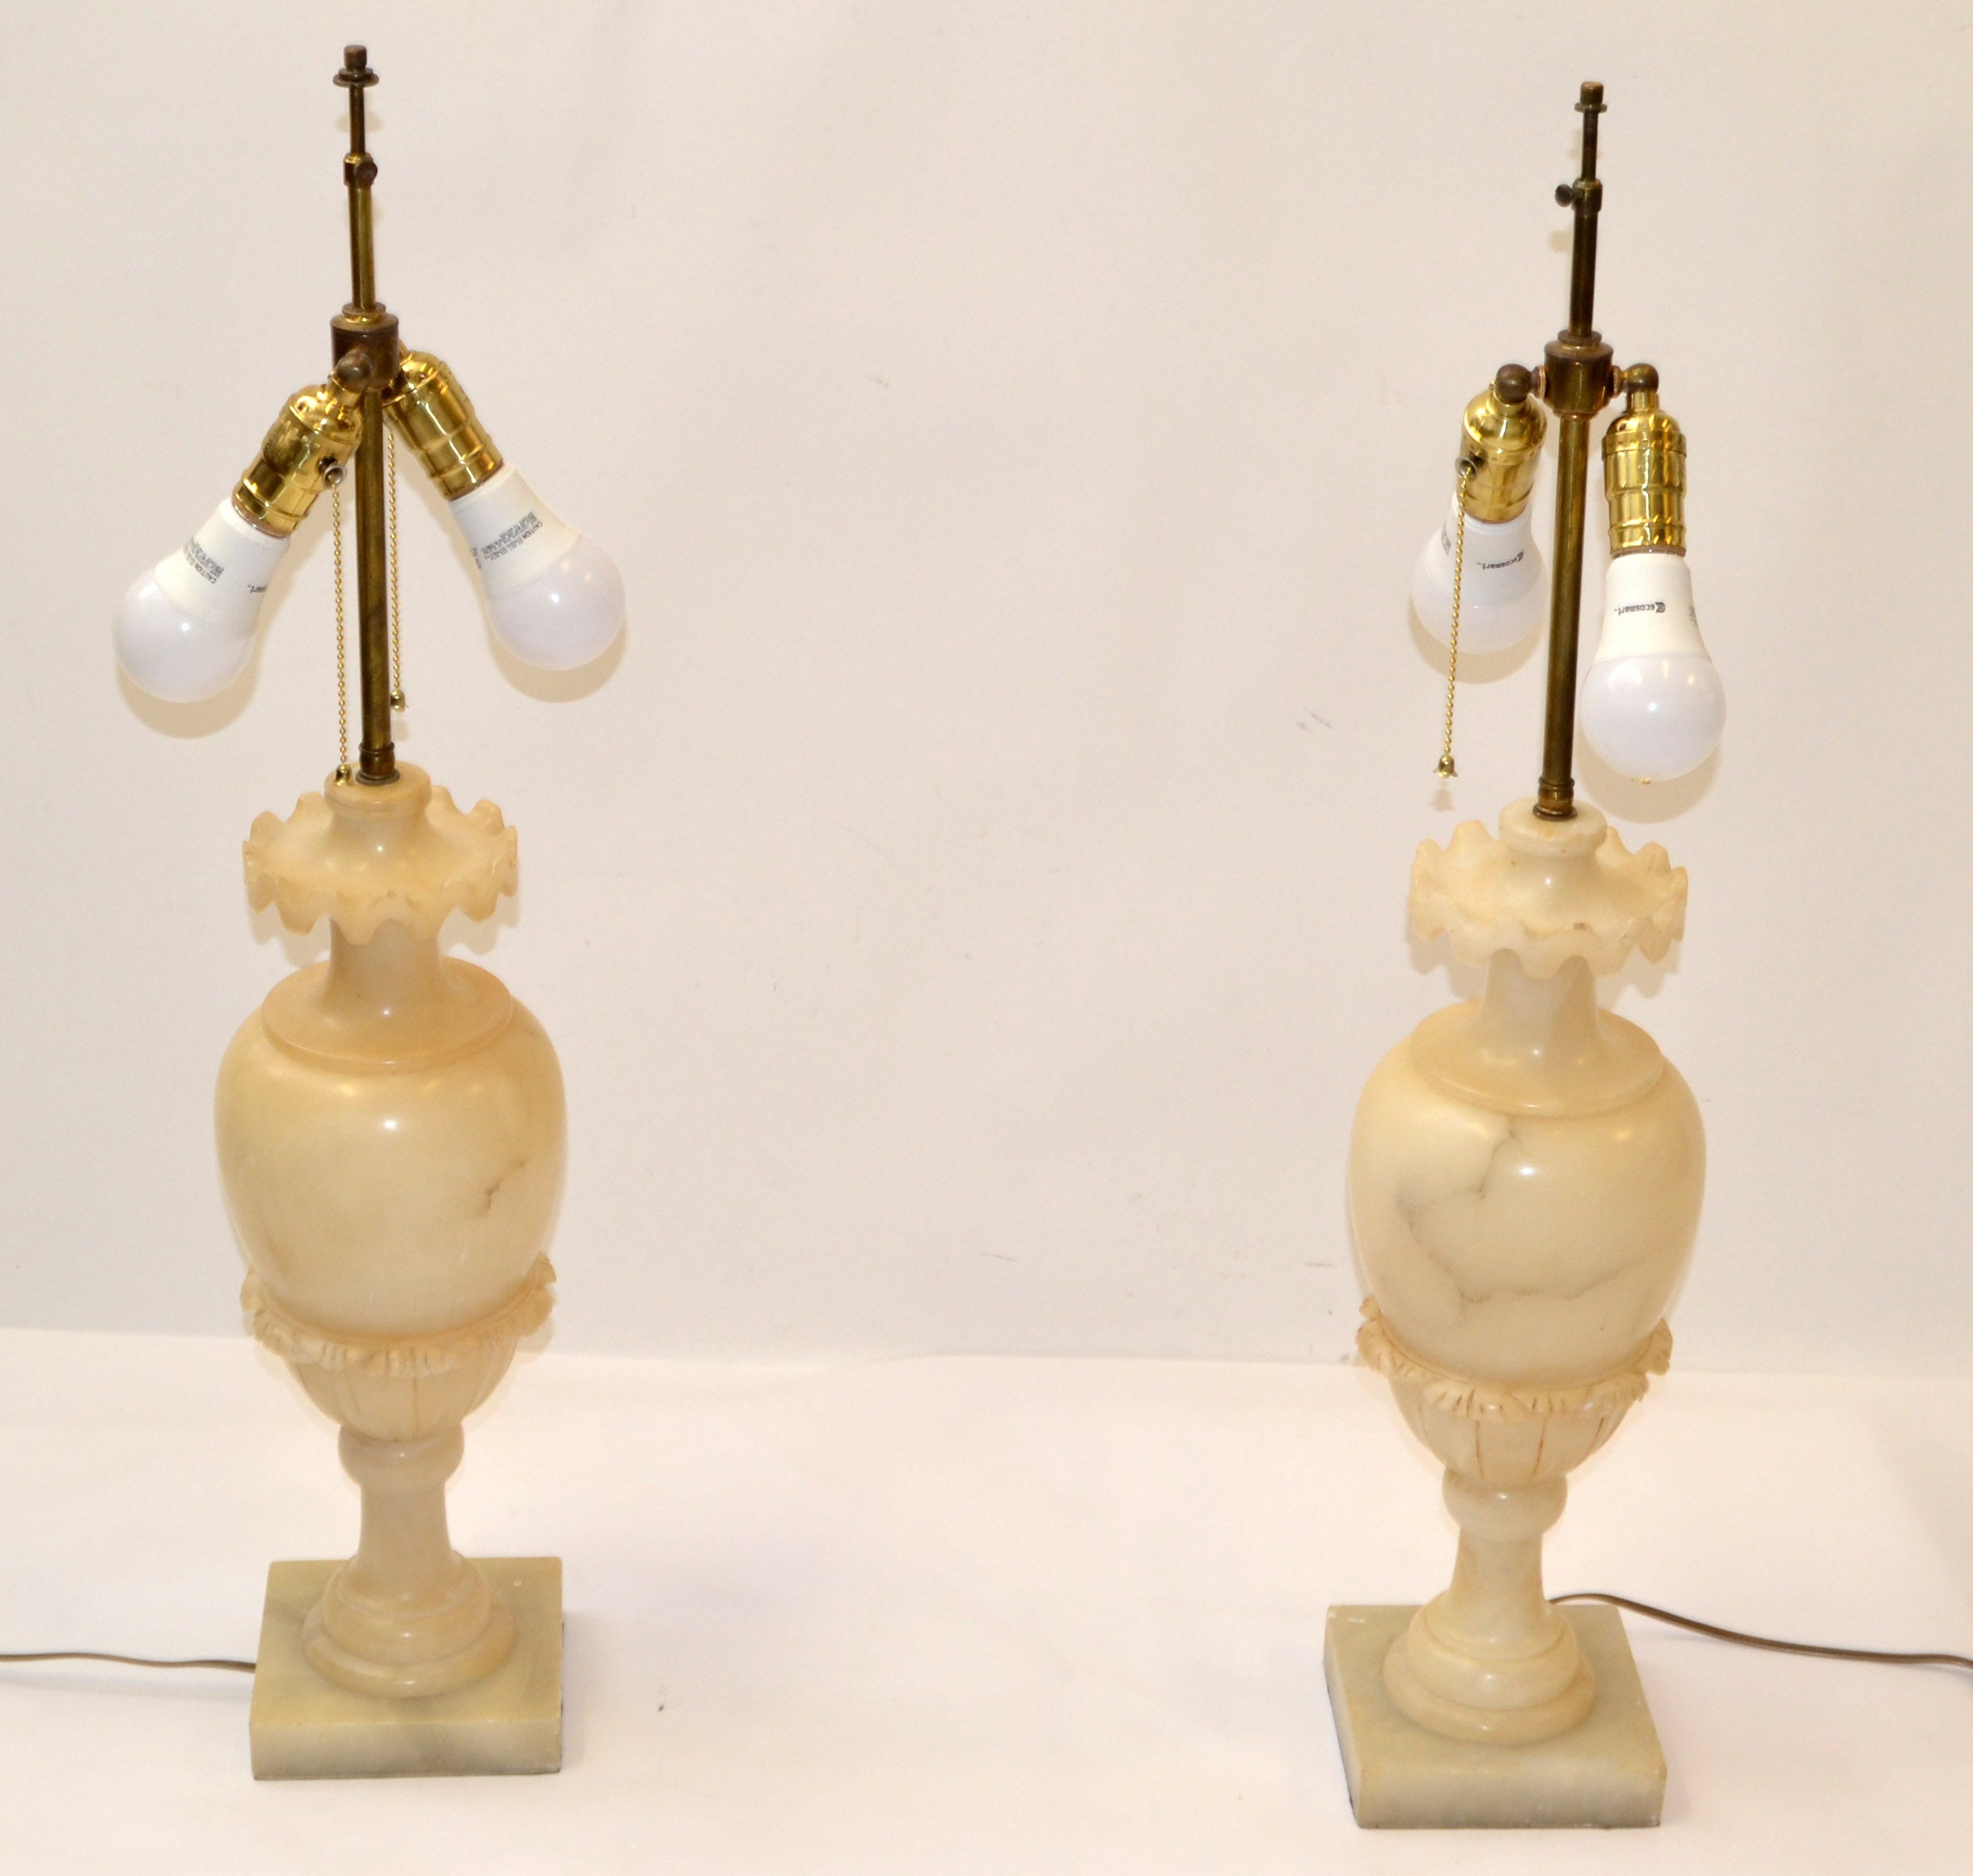 Ein Paar von Urn förmigen Tischlampen in beige Farbe Alabaster mit hellbraunen Adern. 
Alle Art Deco Periode, handgeschnitzt, US Neuverkabelung und hergestellt in Italien ca. 1930-1940s.    
Die Lampenfassungen sind aus Messing mit 2 Zoll